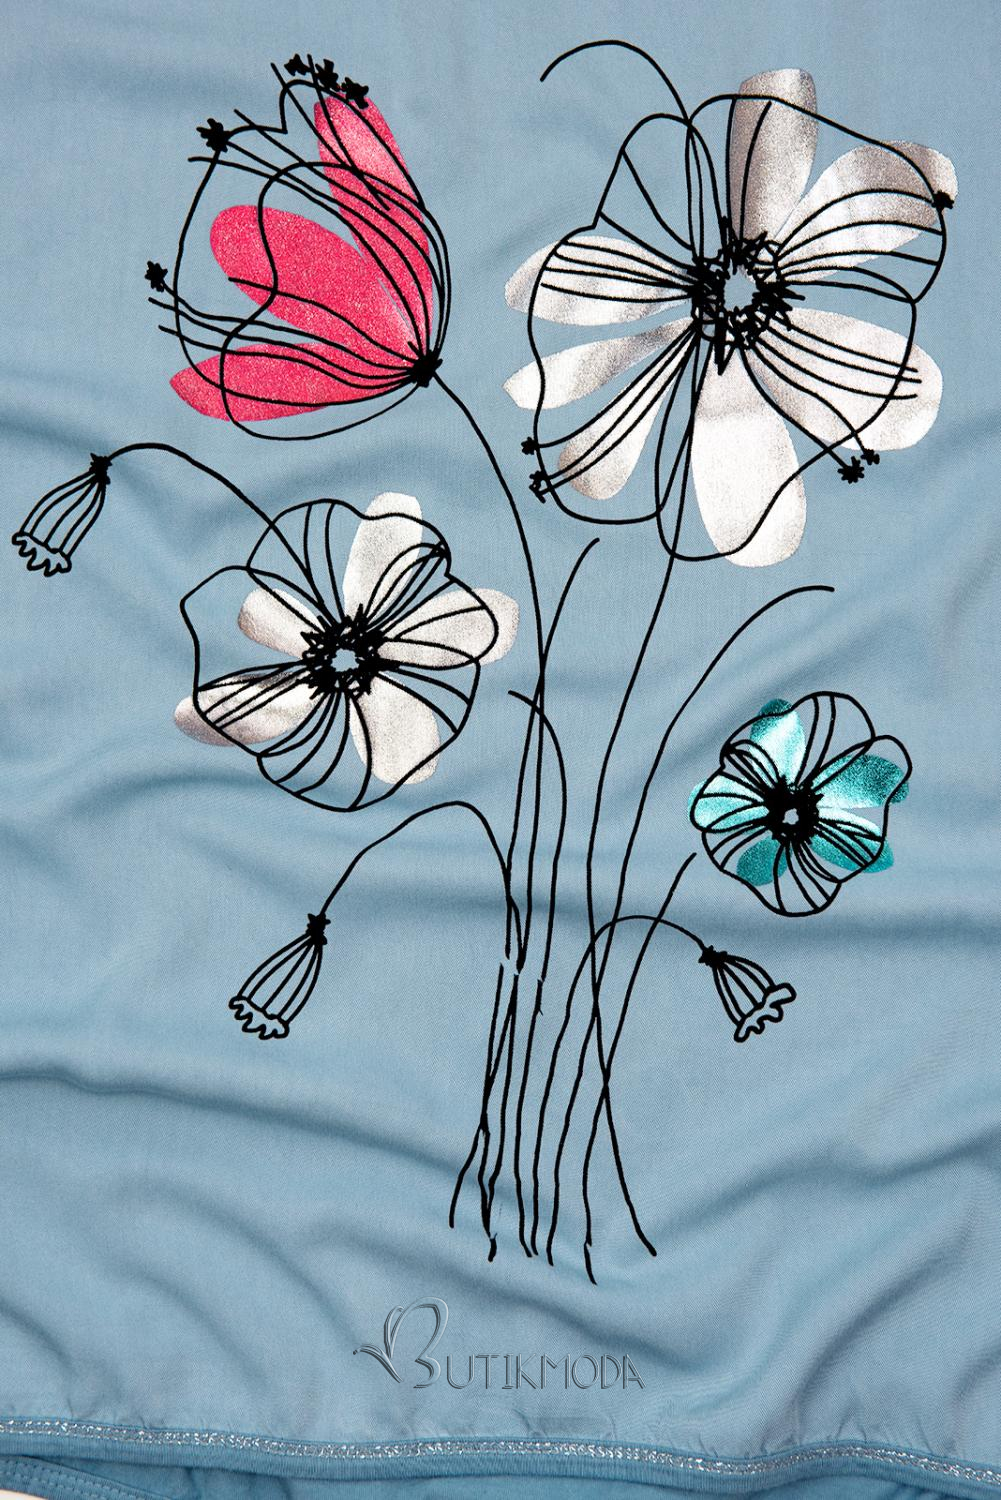 Farmerkék színű virágmintás póló